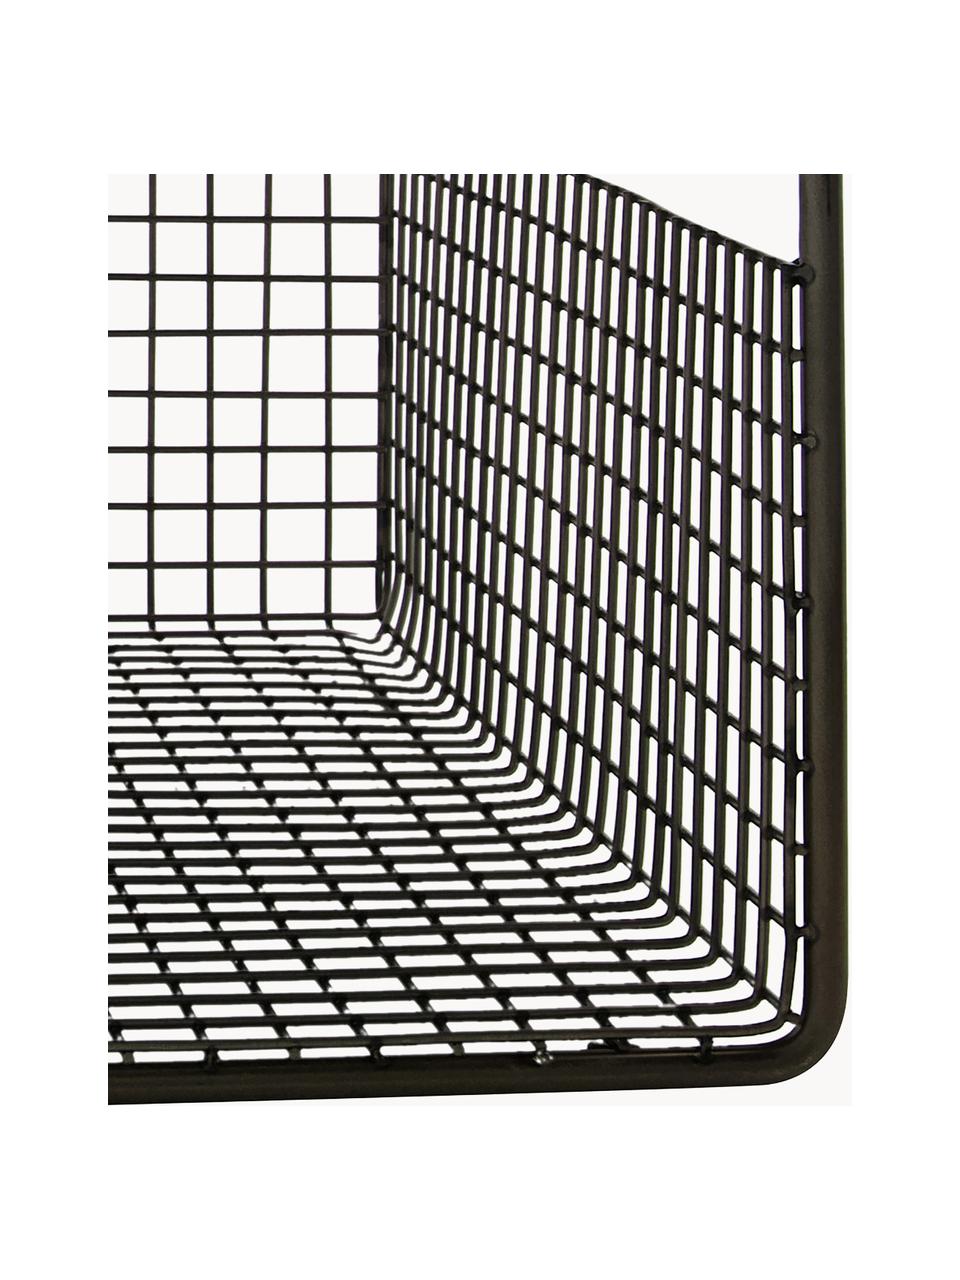 Unterboden-Regal Fari aus Stahl, 2 Stück, Stahl, beschichtet, Schwarz, B 35 x H 14 cm